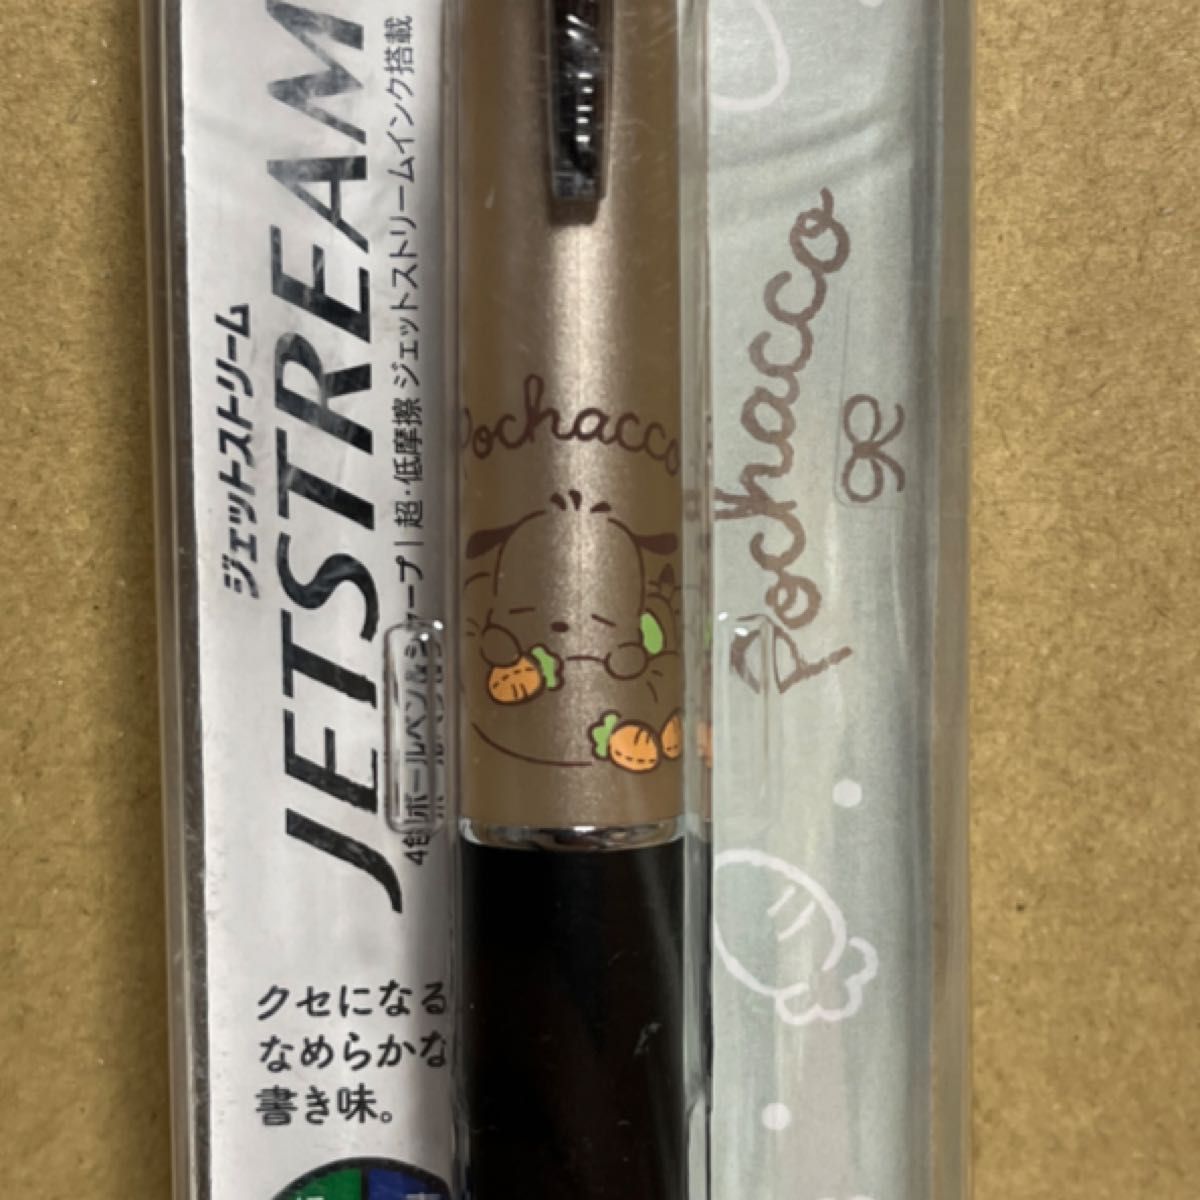 ジェットストリーム4&1 0.5mm ポチャッコ シャンパンゴールド【新品未開封】